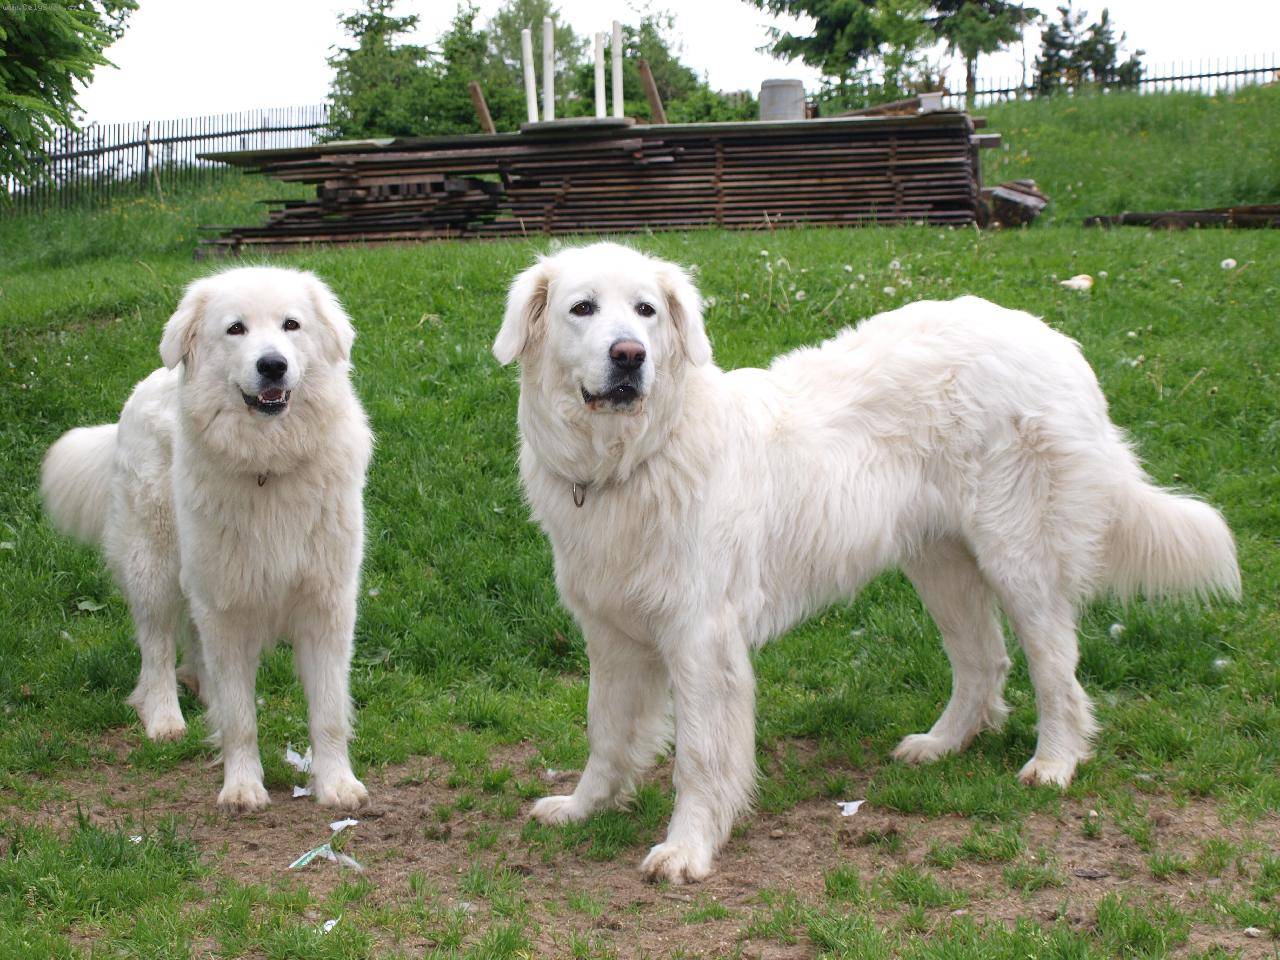 Словацкий чувач (кувач): фото породы собак, описание характера